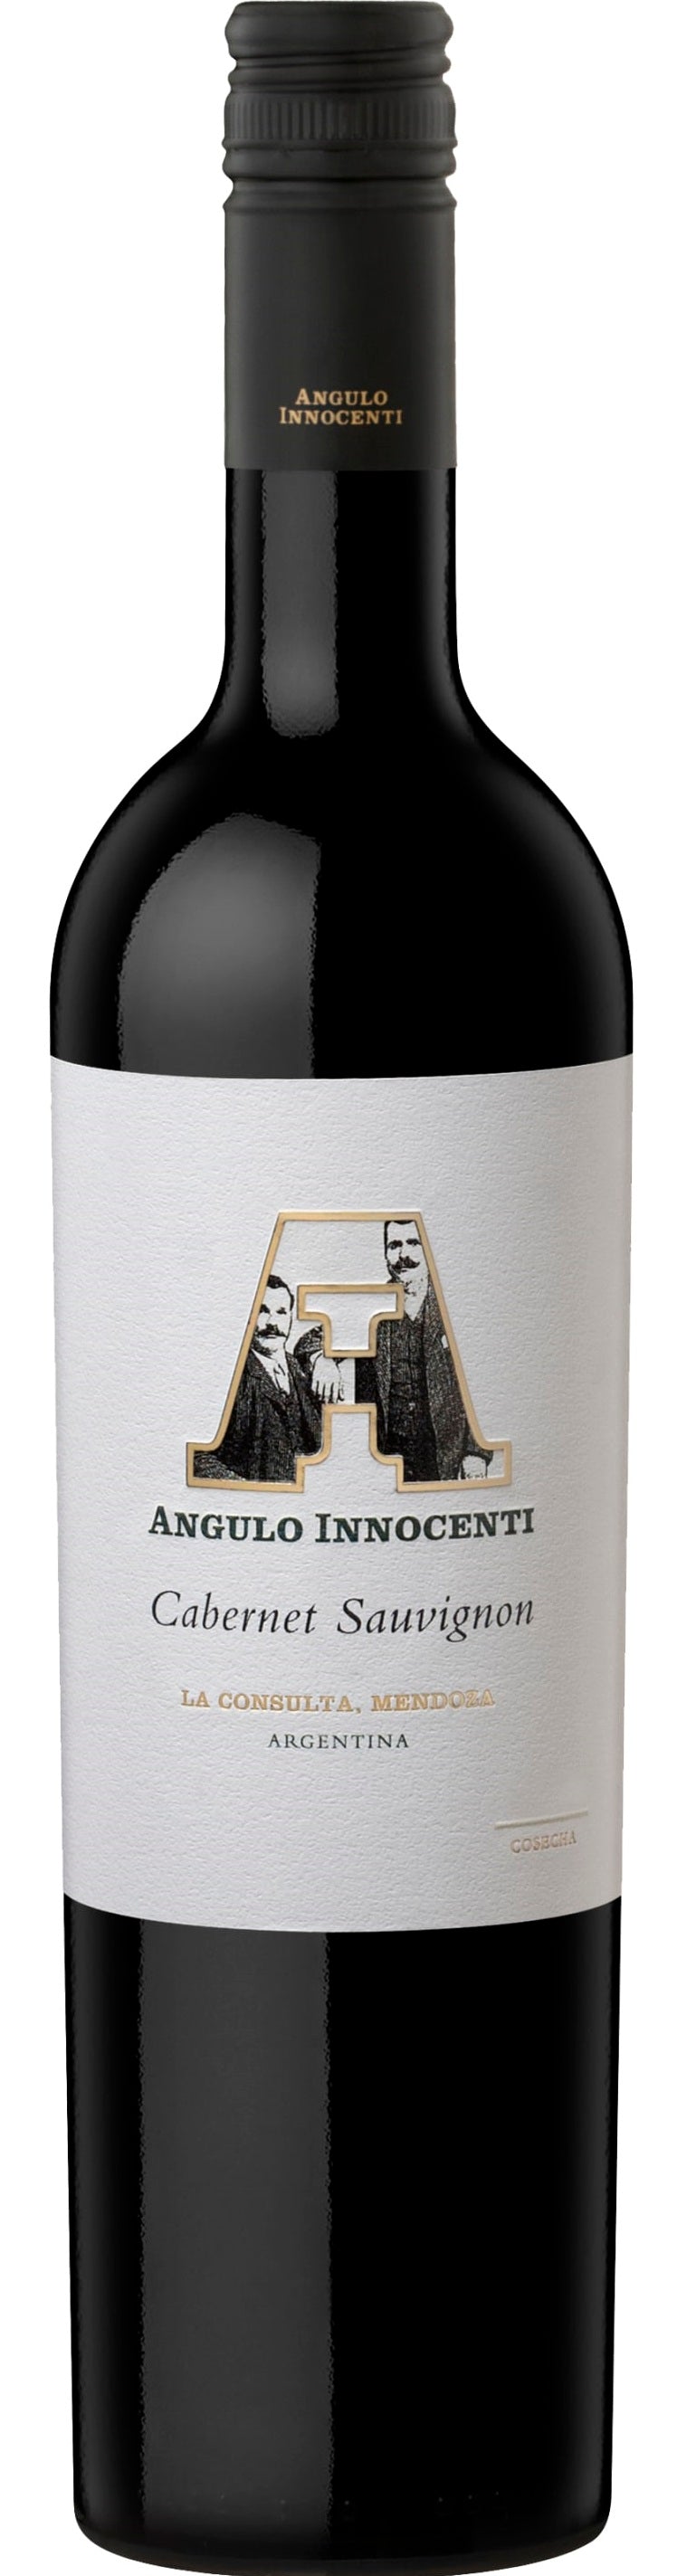 Angulo Innocenti Cabernet Sauvignon 2017